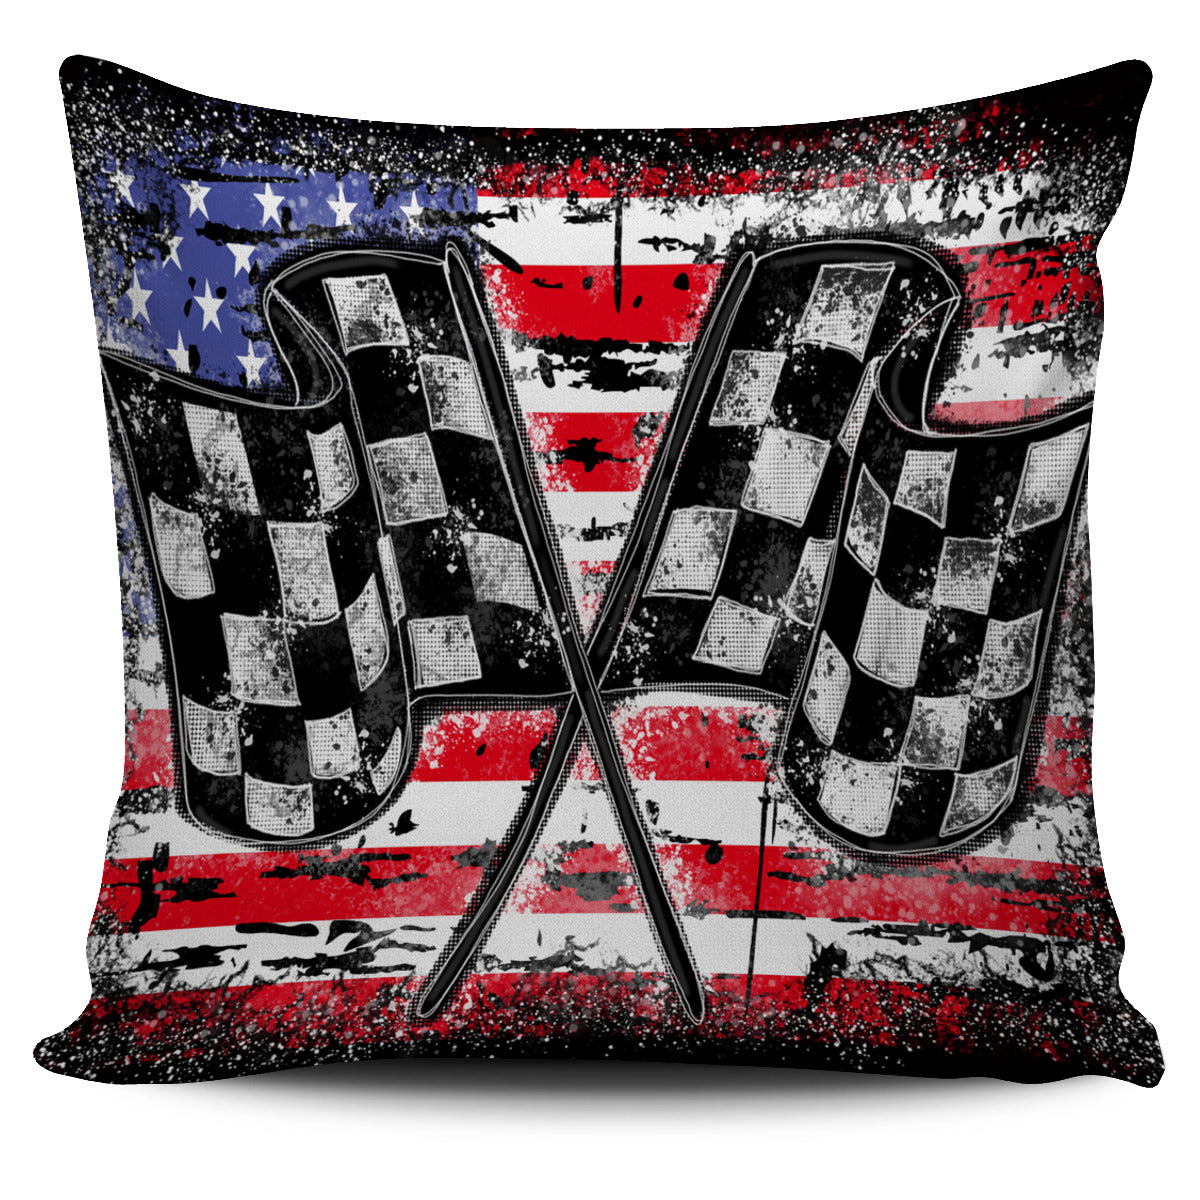 Racing Checkered USA Flag Pillow cover